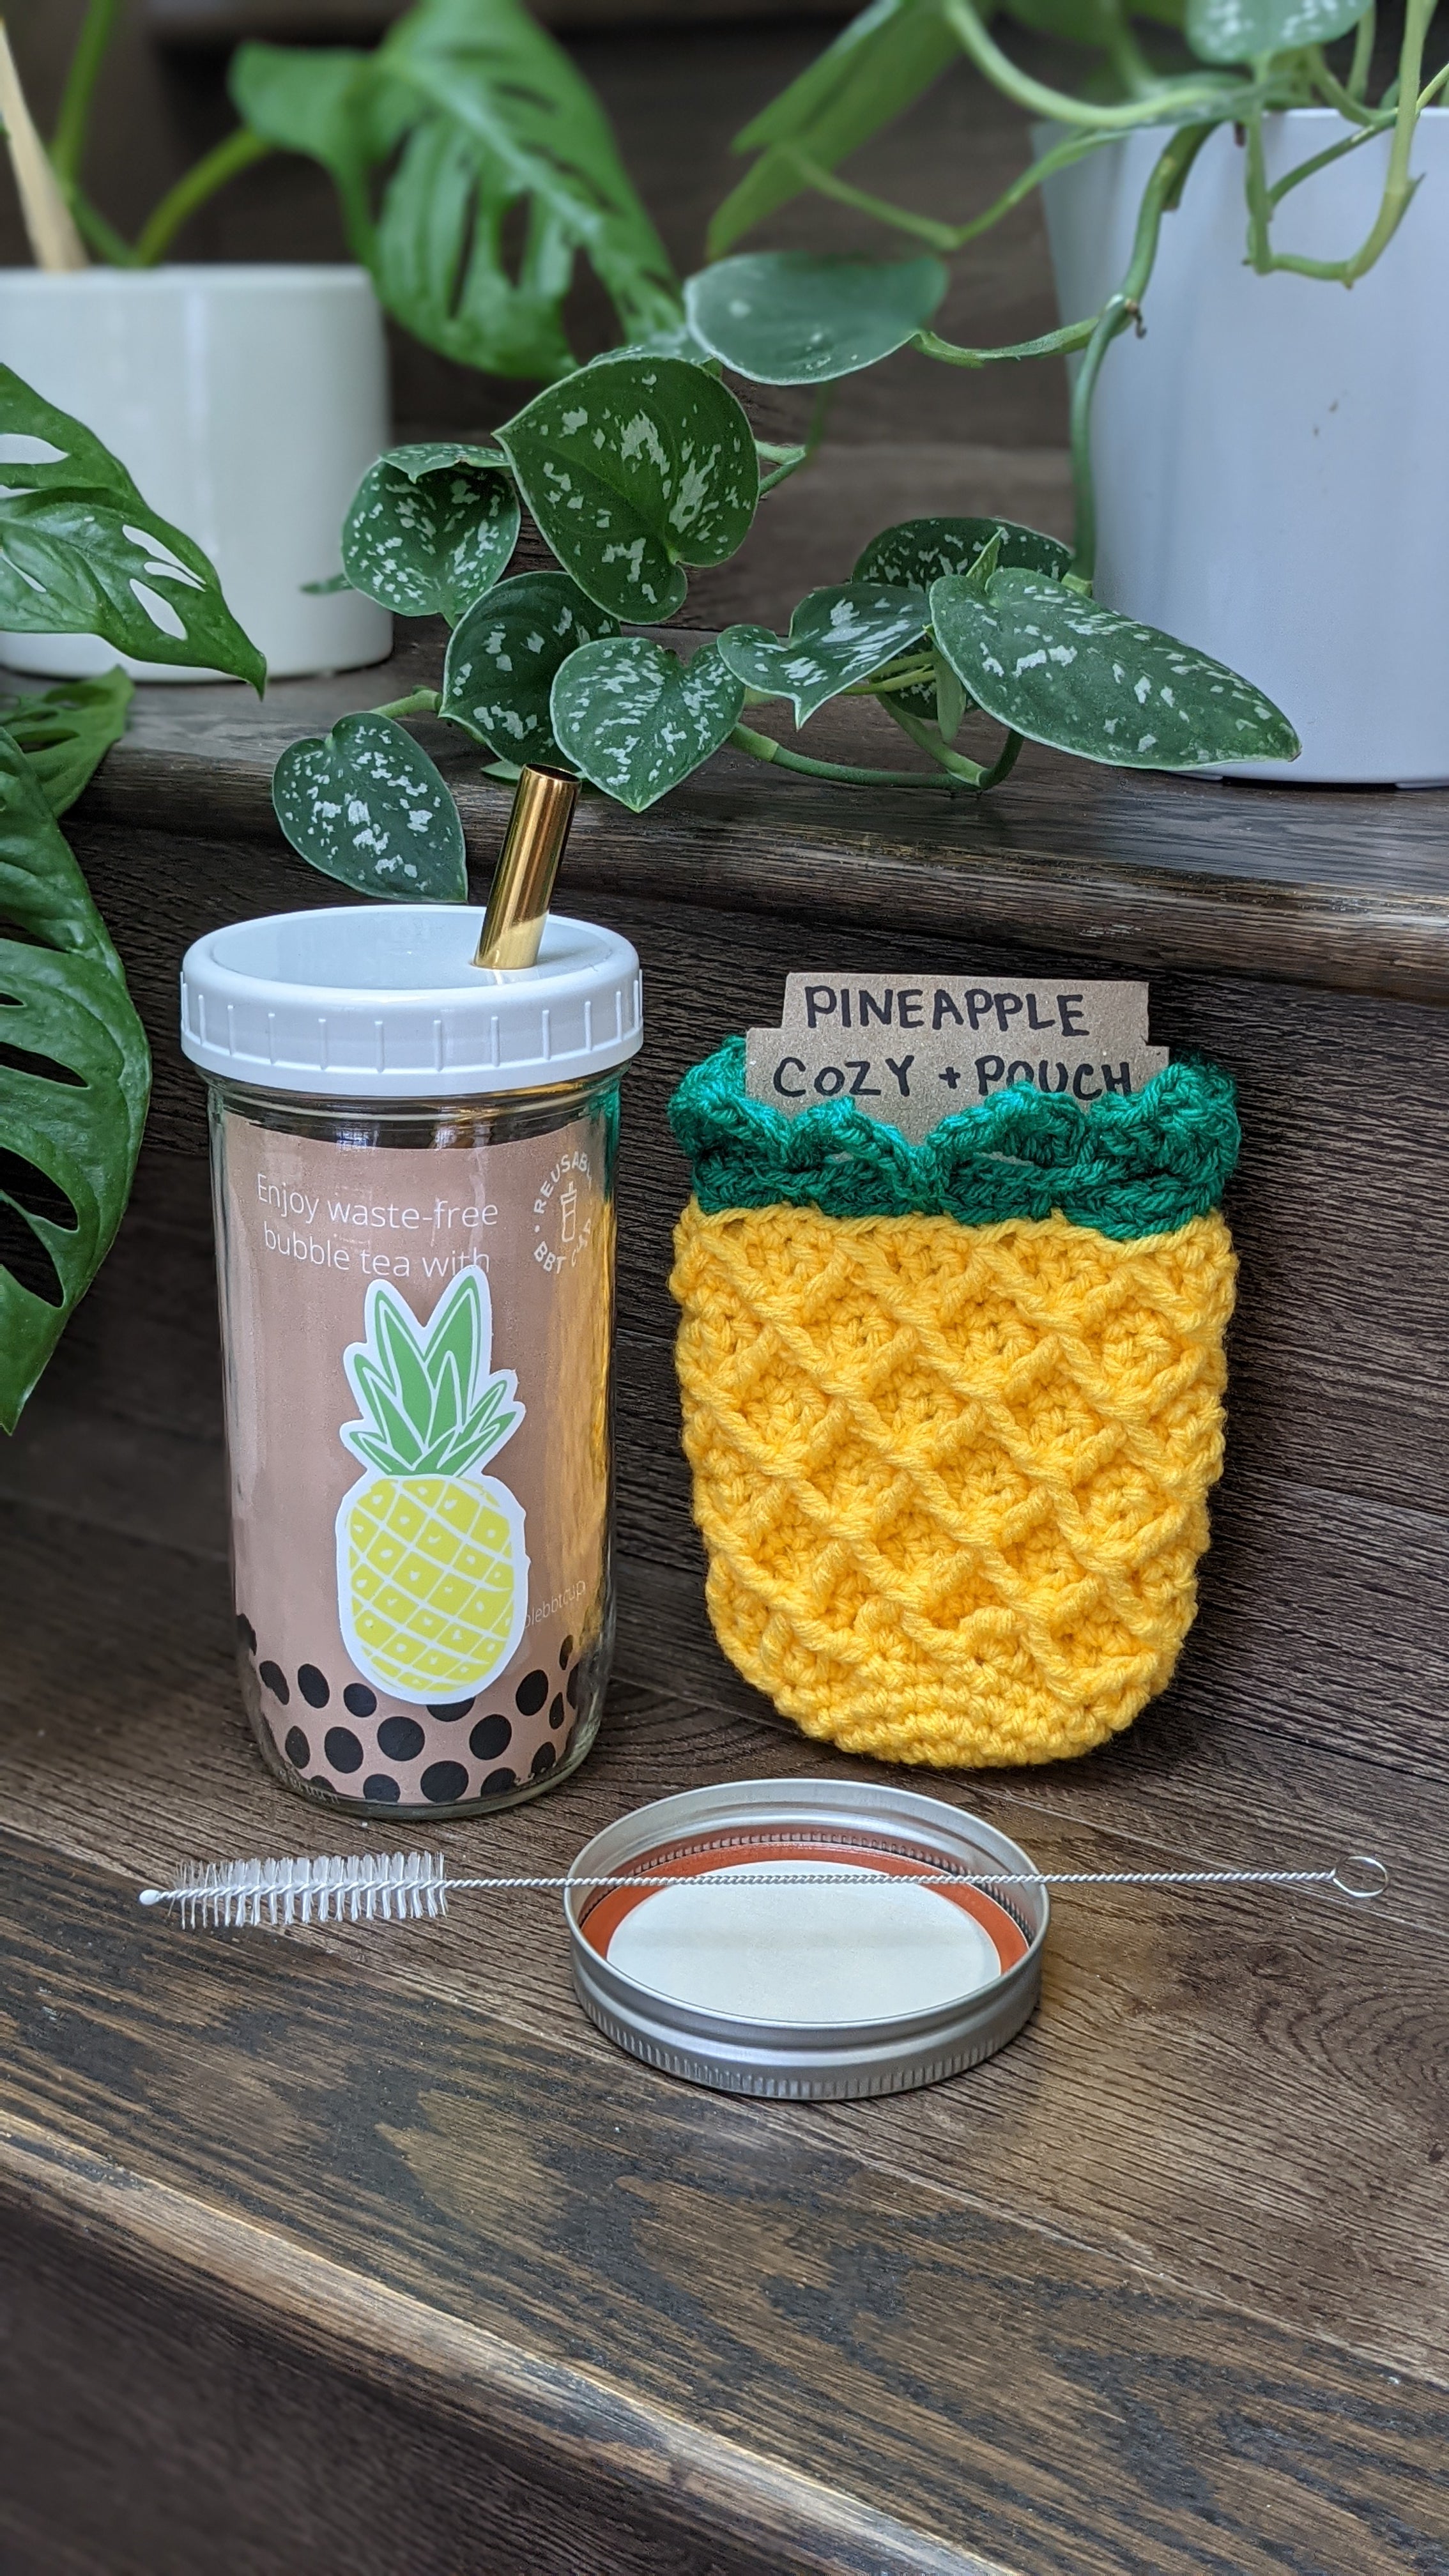 Pineapple Themed Gift Set